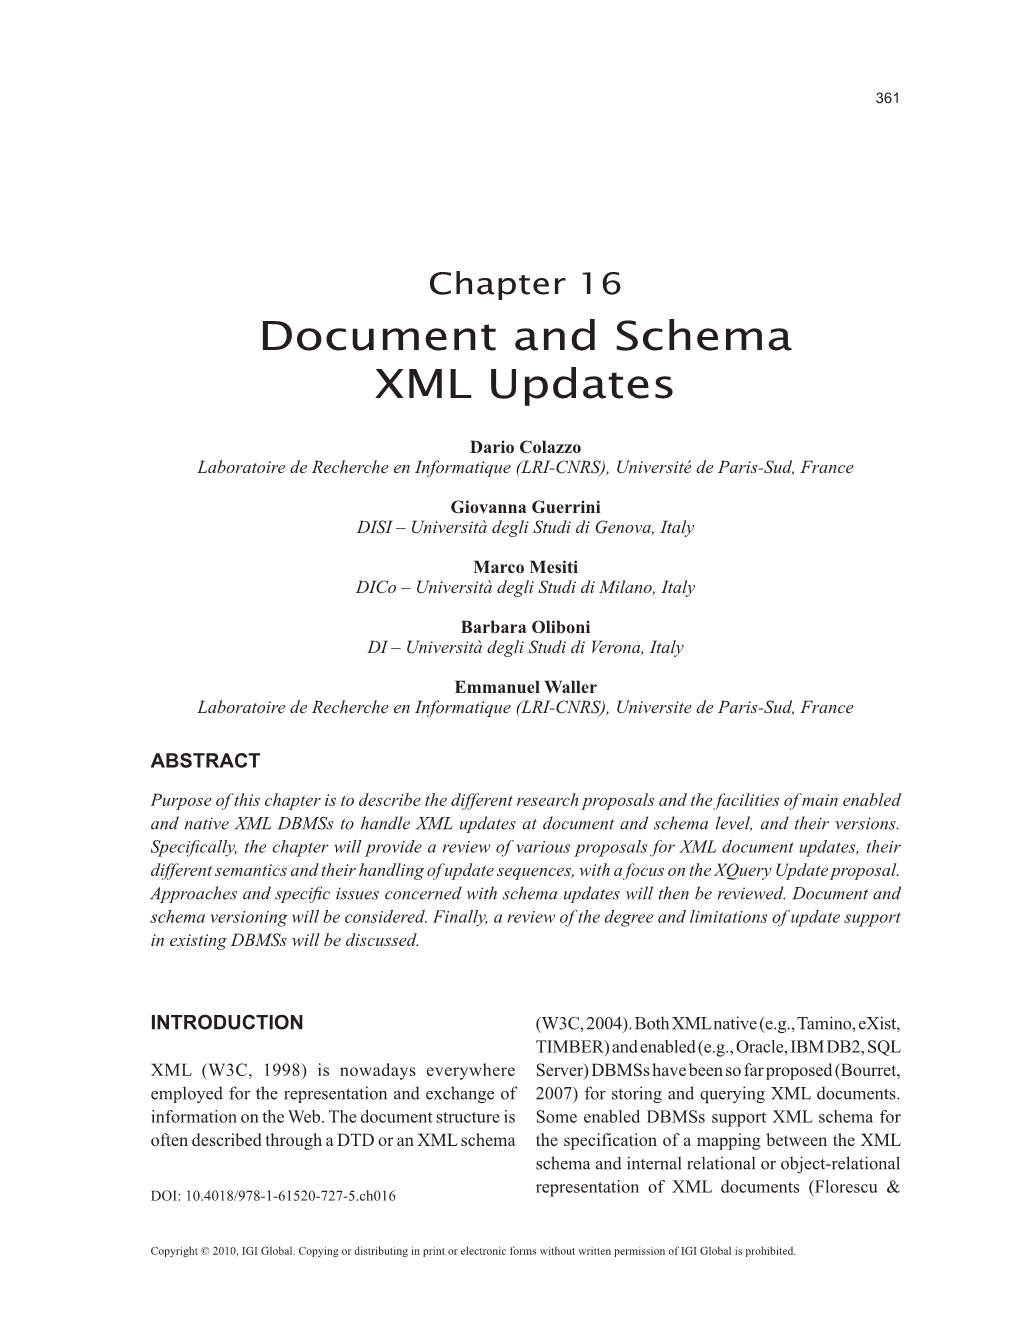 Document and Schema XML Updates